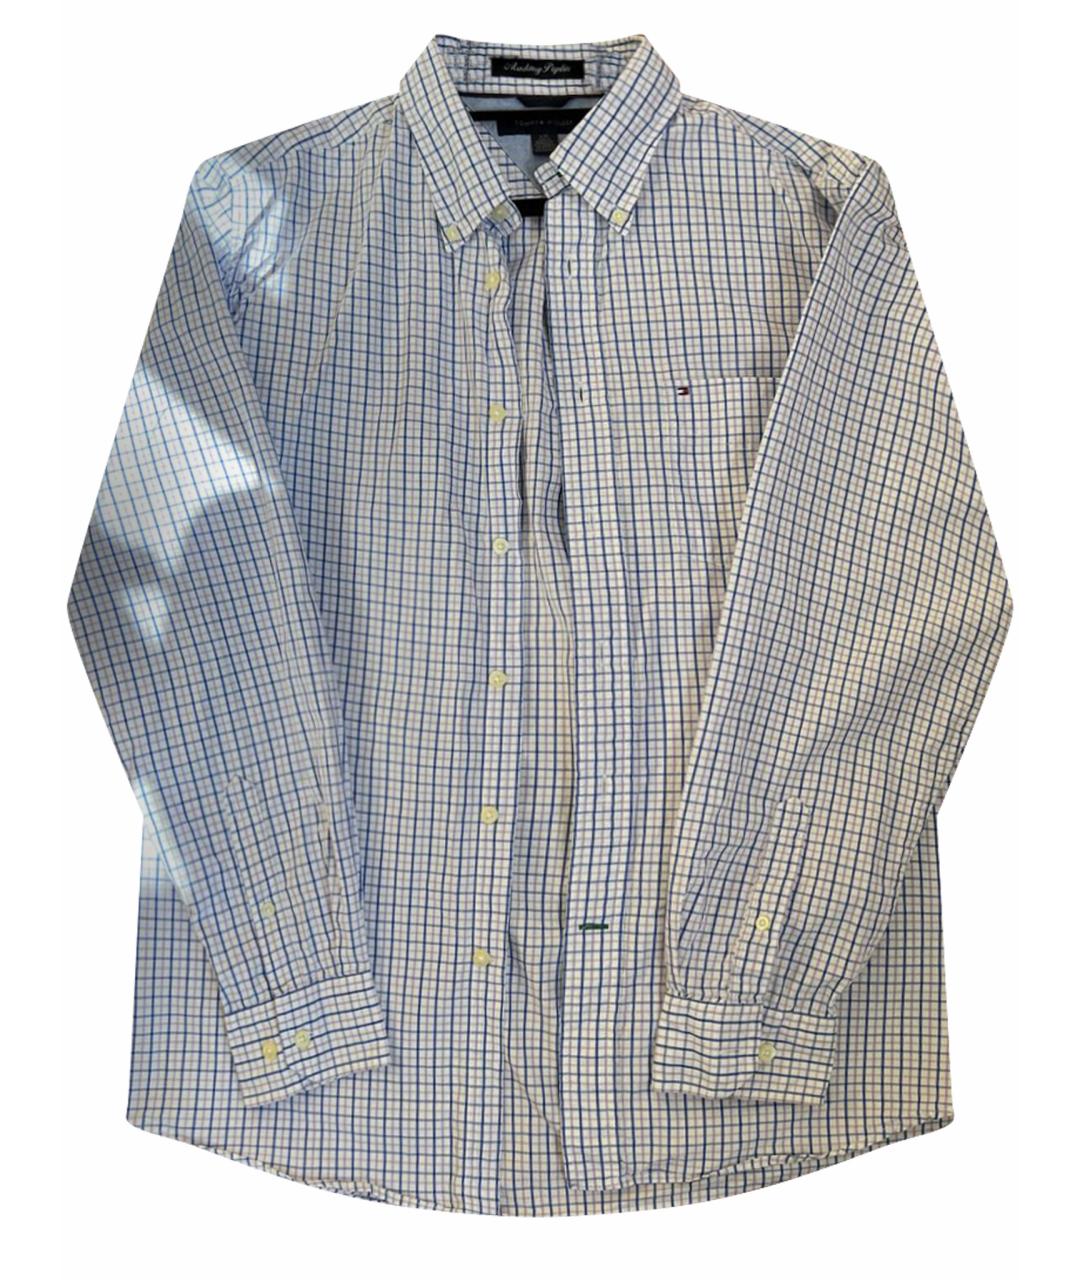 TOMMY HILFIGER Хлопковая классическая рубашка, фото 1